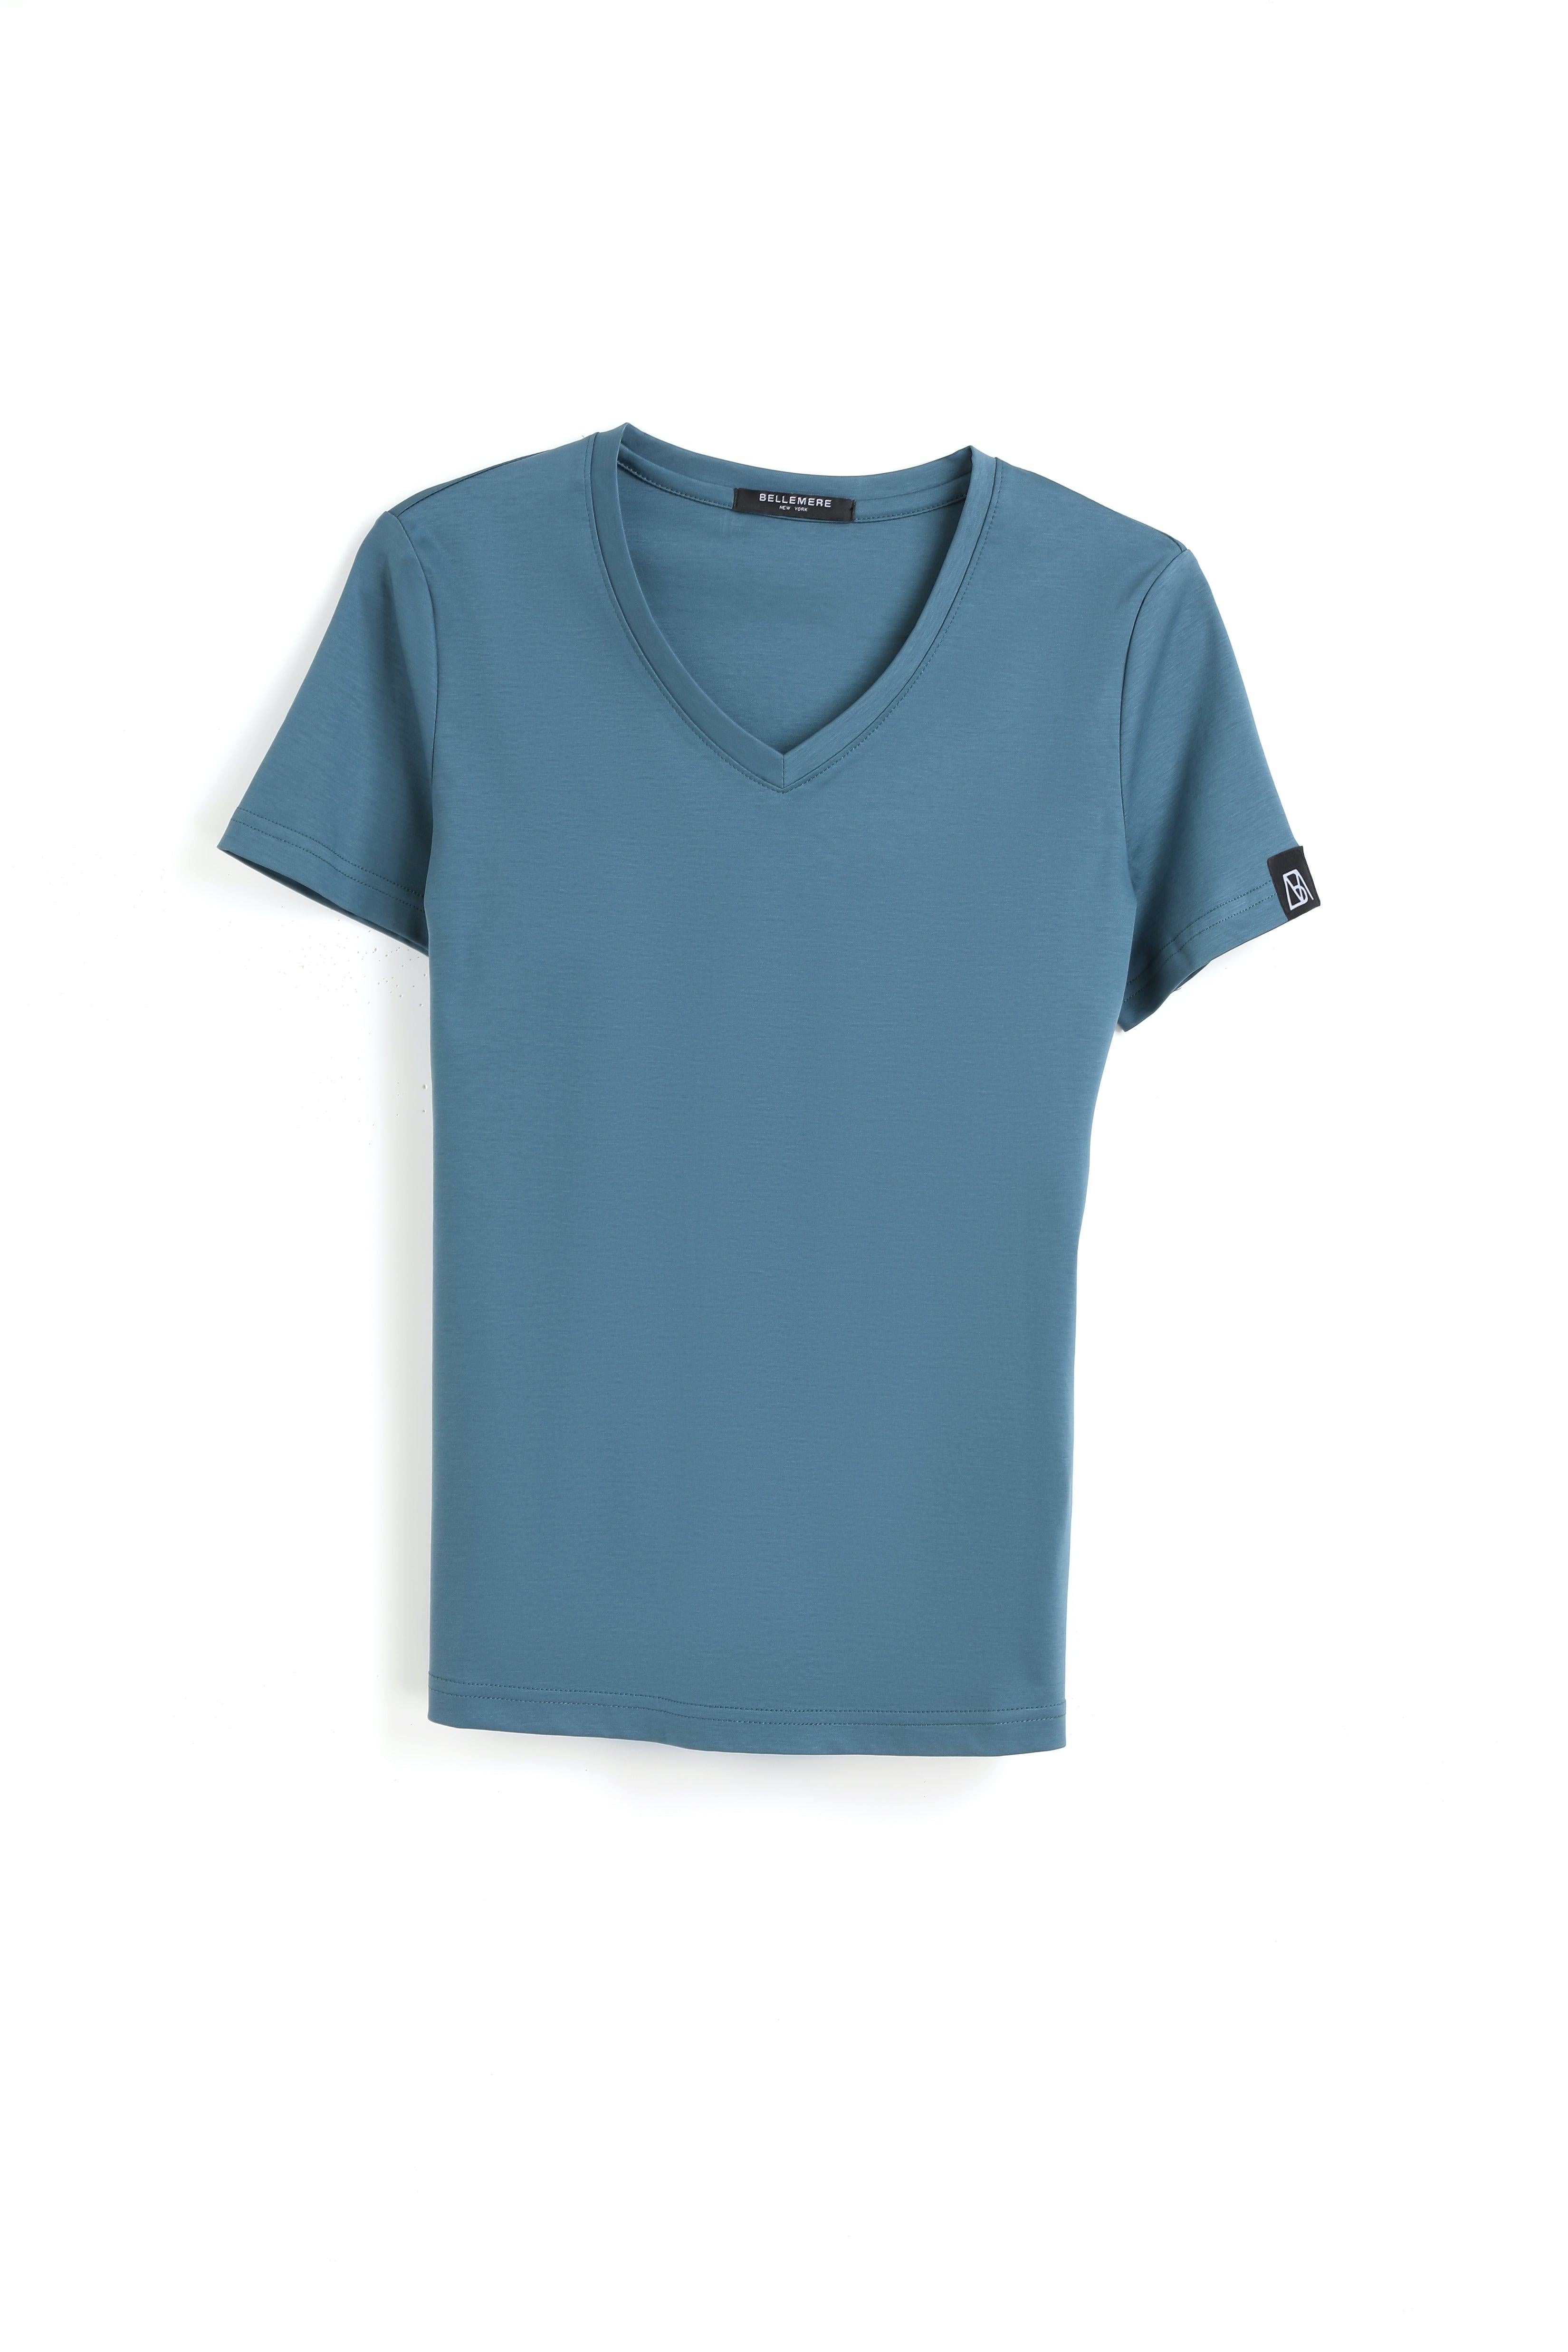 190g Mercerized Cotton Women V Neck T-shirt - Bellemere New York 